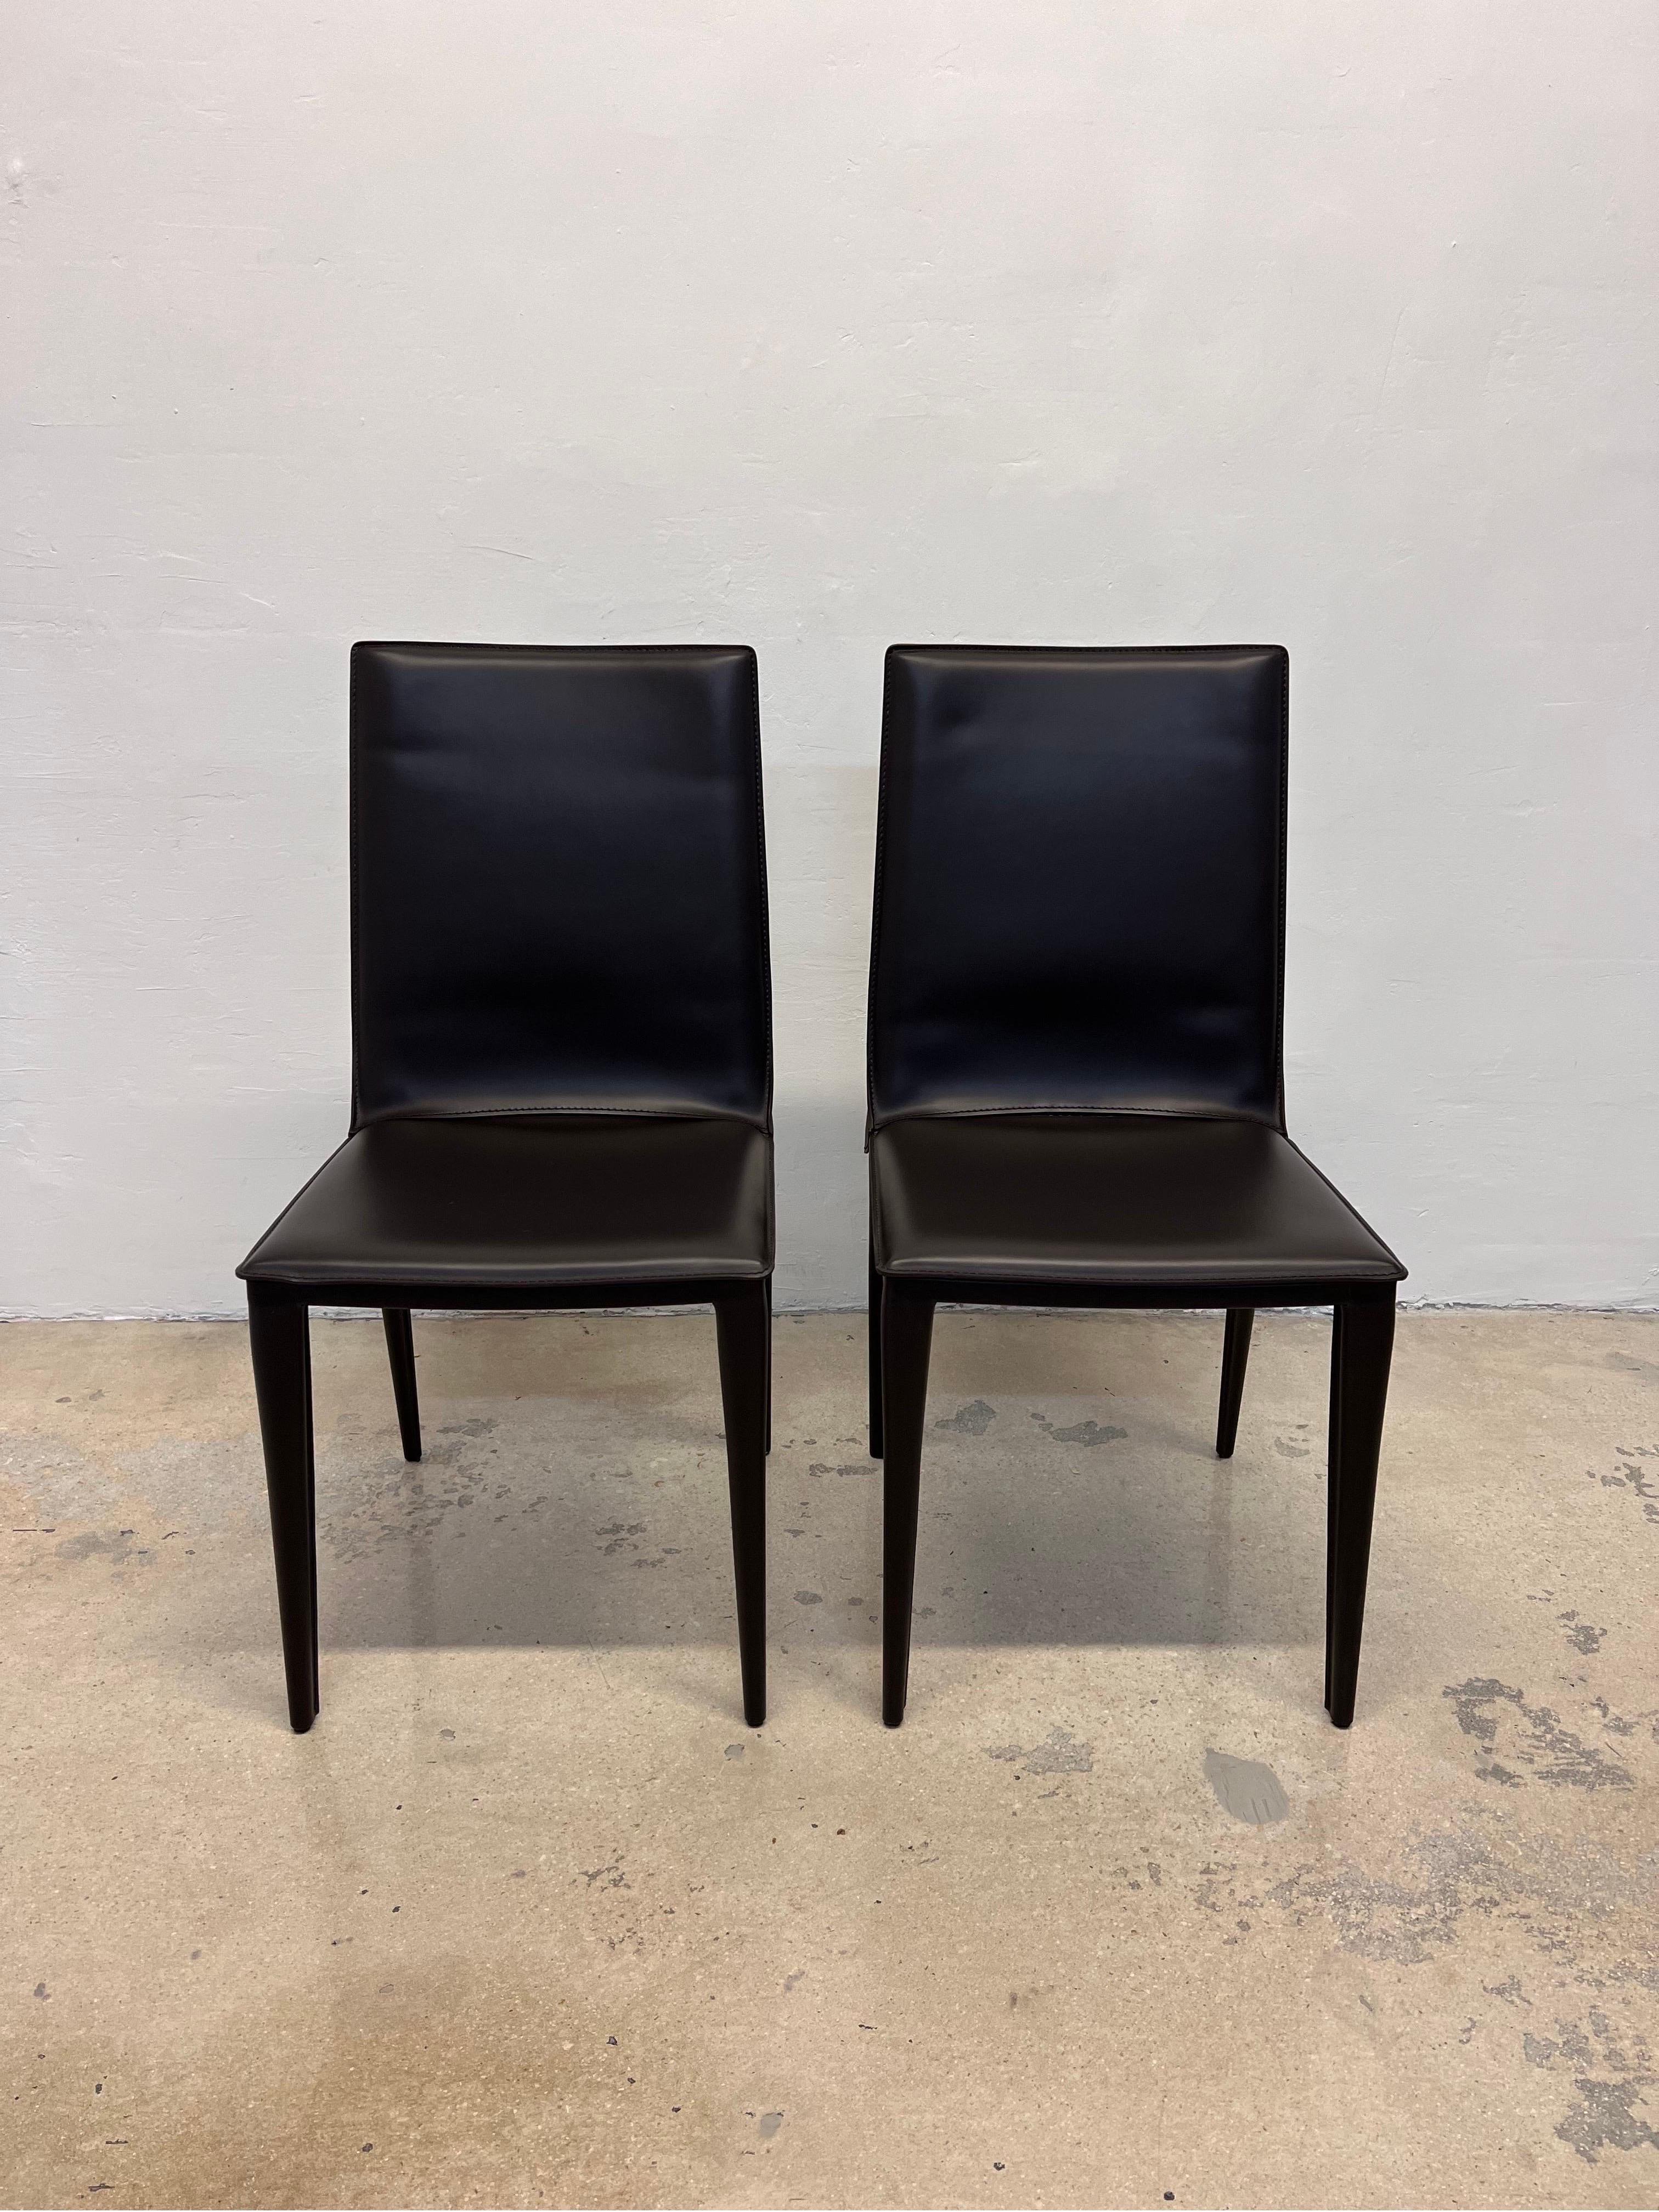 Ein Paar schokoladenbraune Bottega-Ledersessel, entworfen von Renzo Fauciglietti & Graziella Bianchi für Design Within Reach. 

Der Bottega Chair (2003) besteht aus einer harmonischen Stahlblech-Rückenlehne, die sich mit dem Körper mitbewegt und